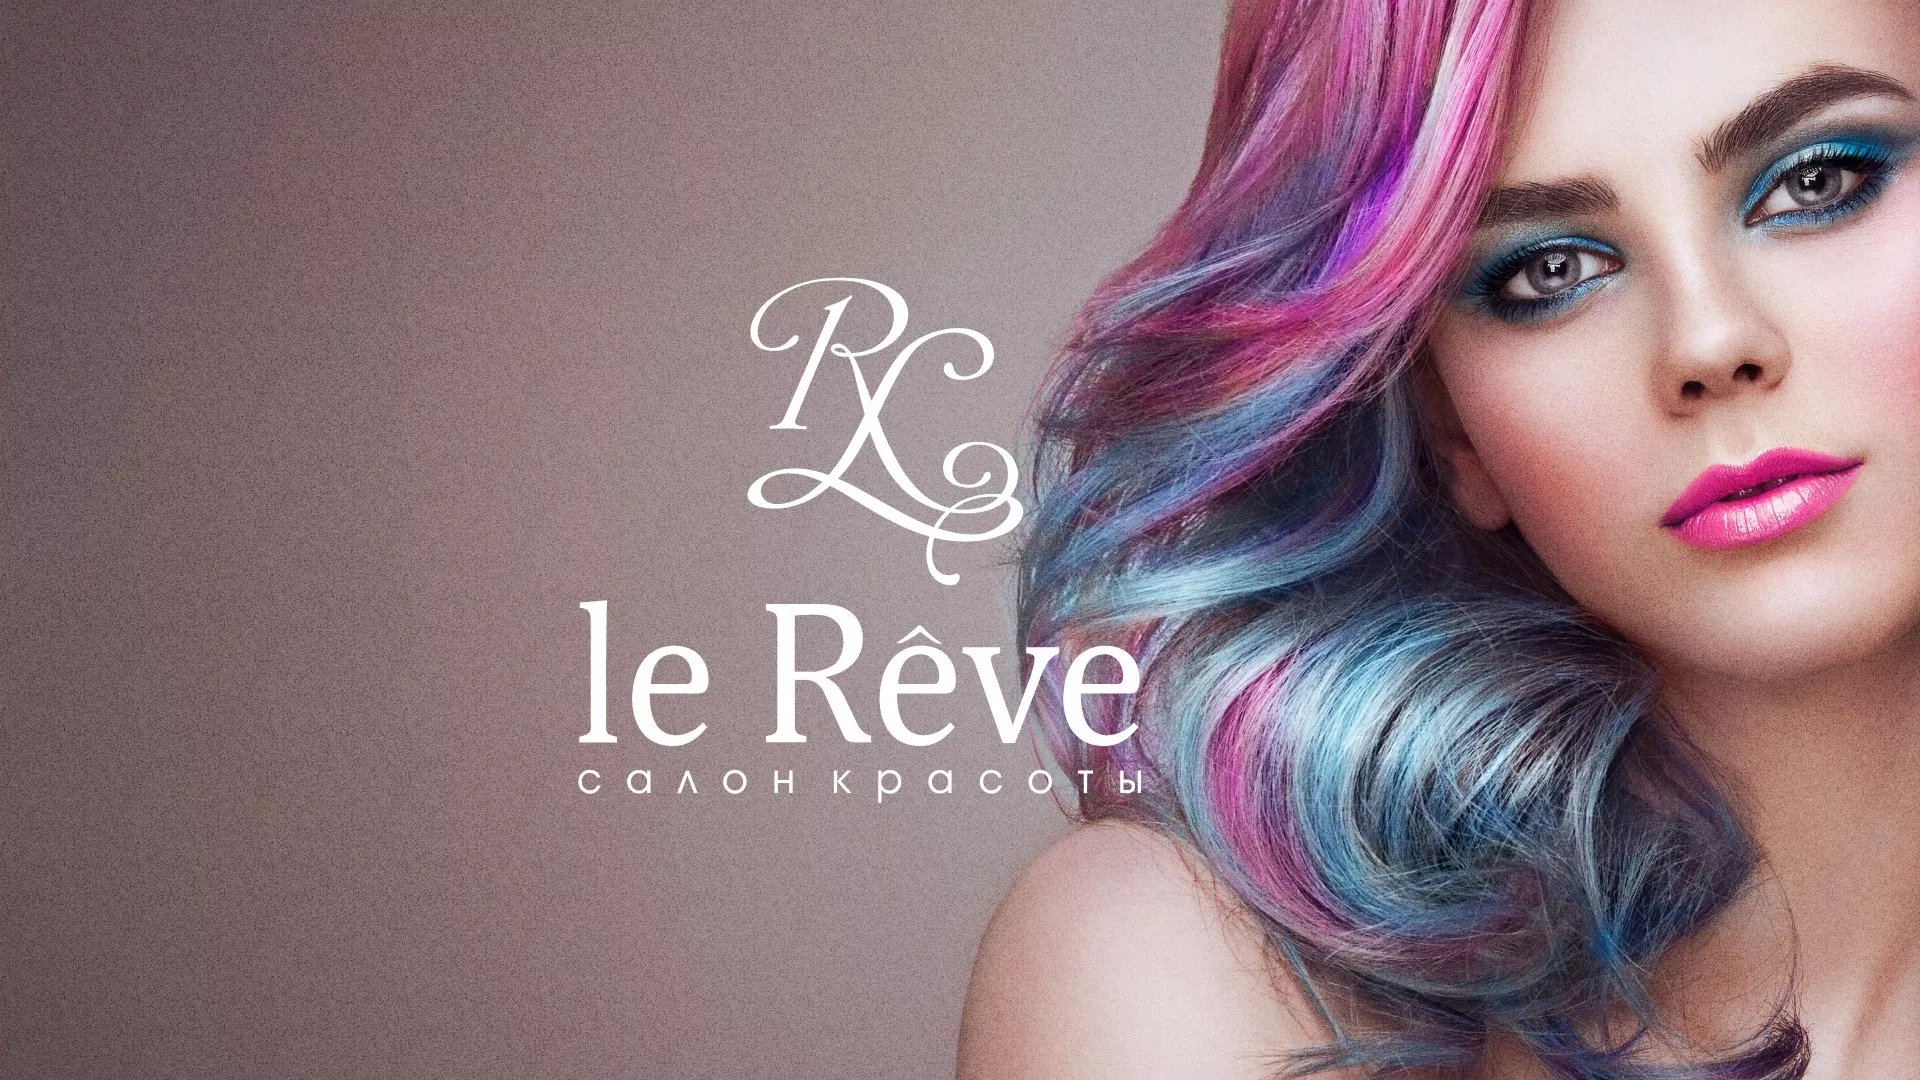 Создание сайта для салона красоты «Le Reve» в Пересвете